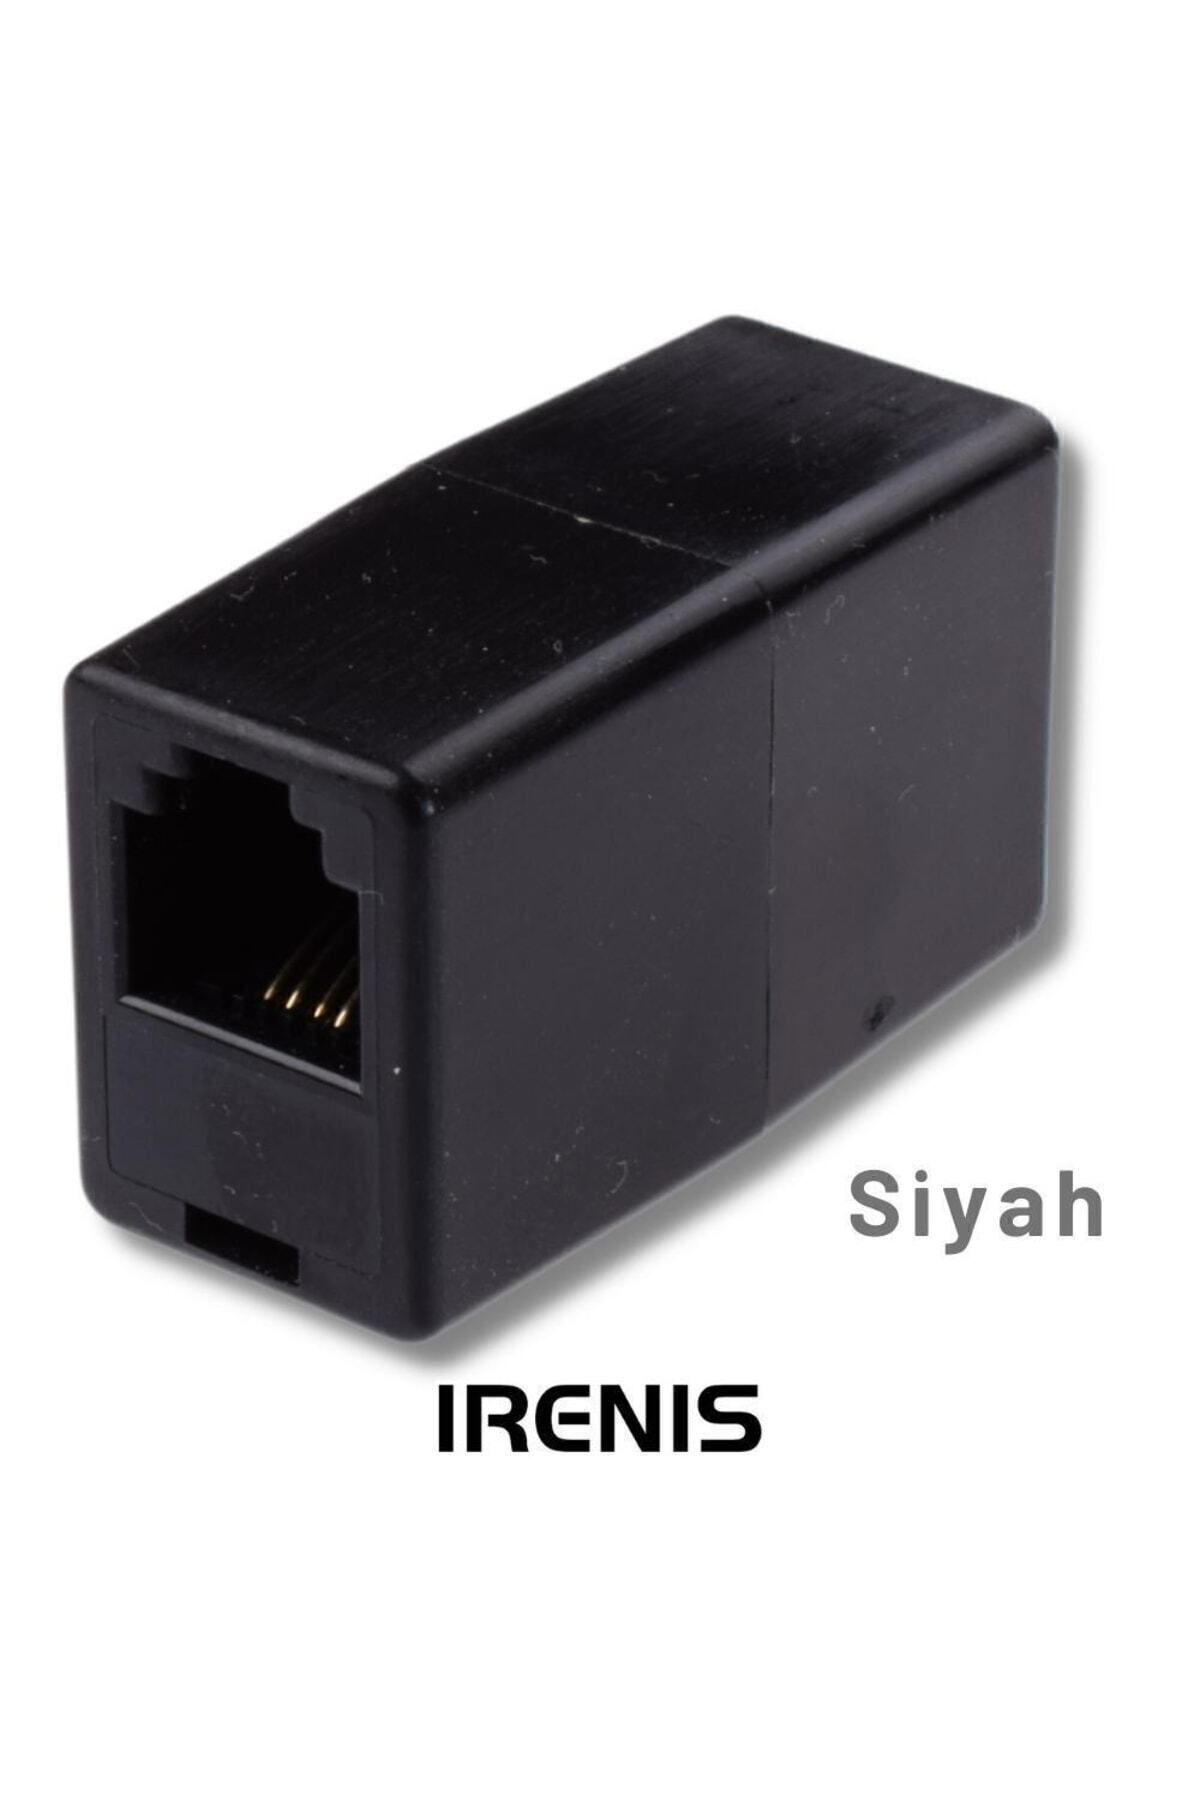 IRENIS Modem Ve Telefon Kablo Ekleyici, Birleştirici, Uzatıcı